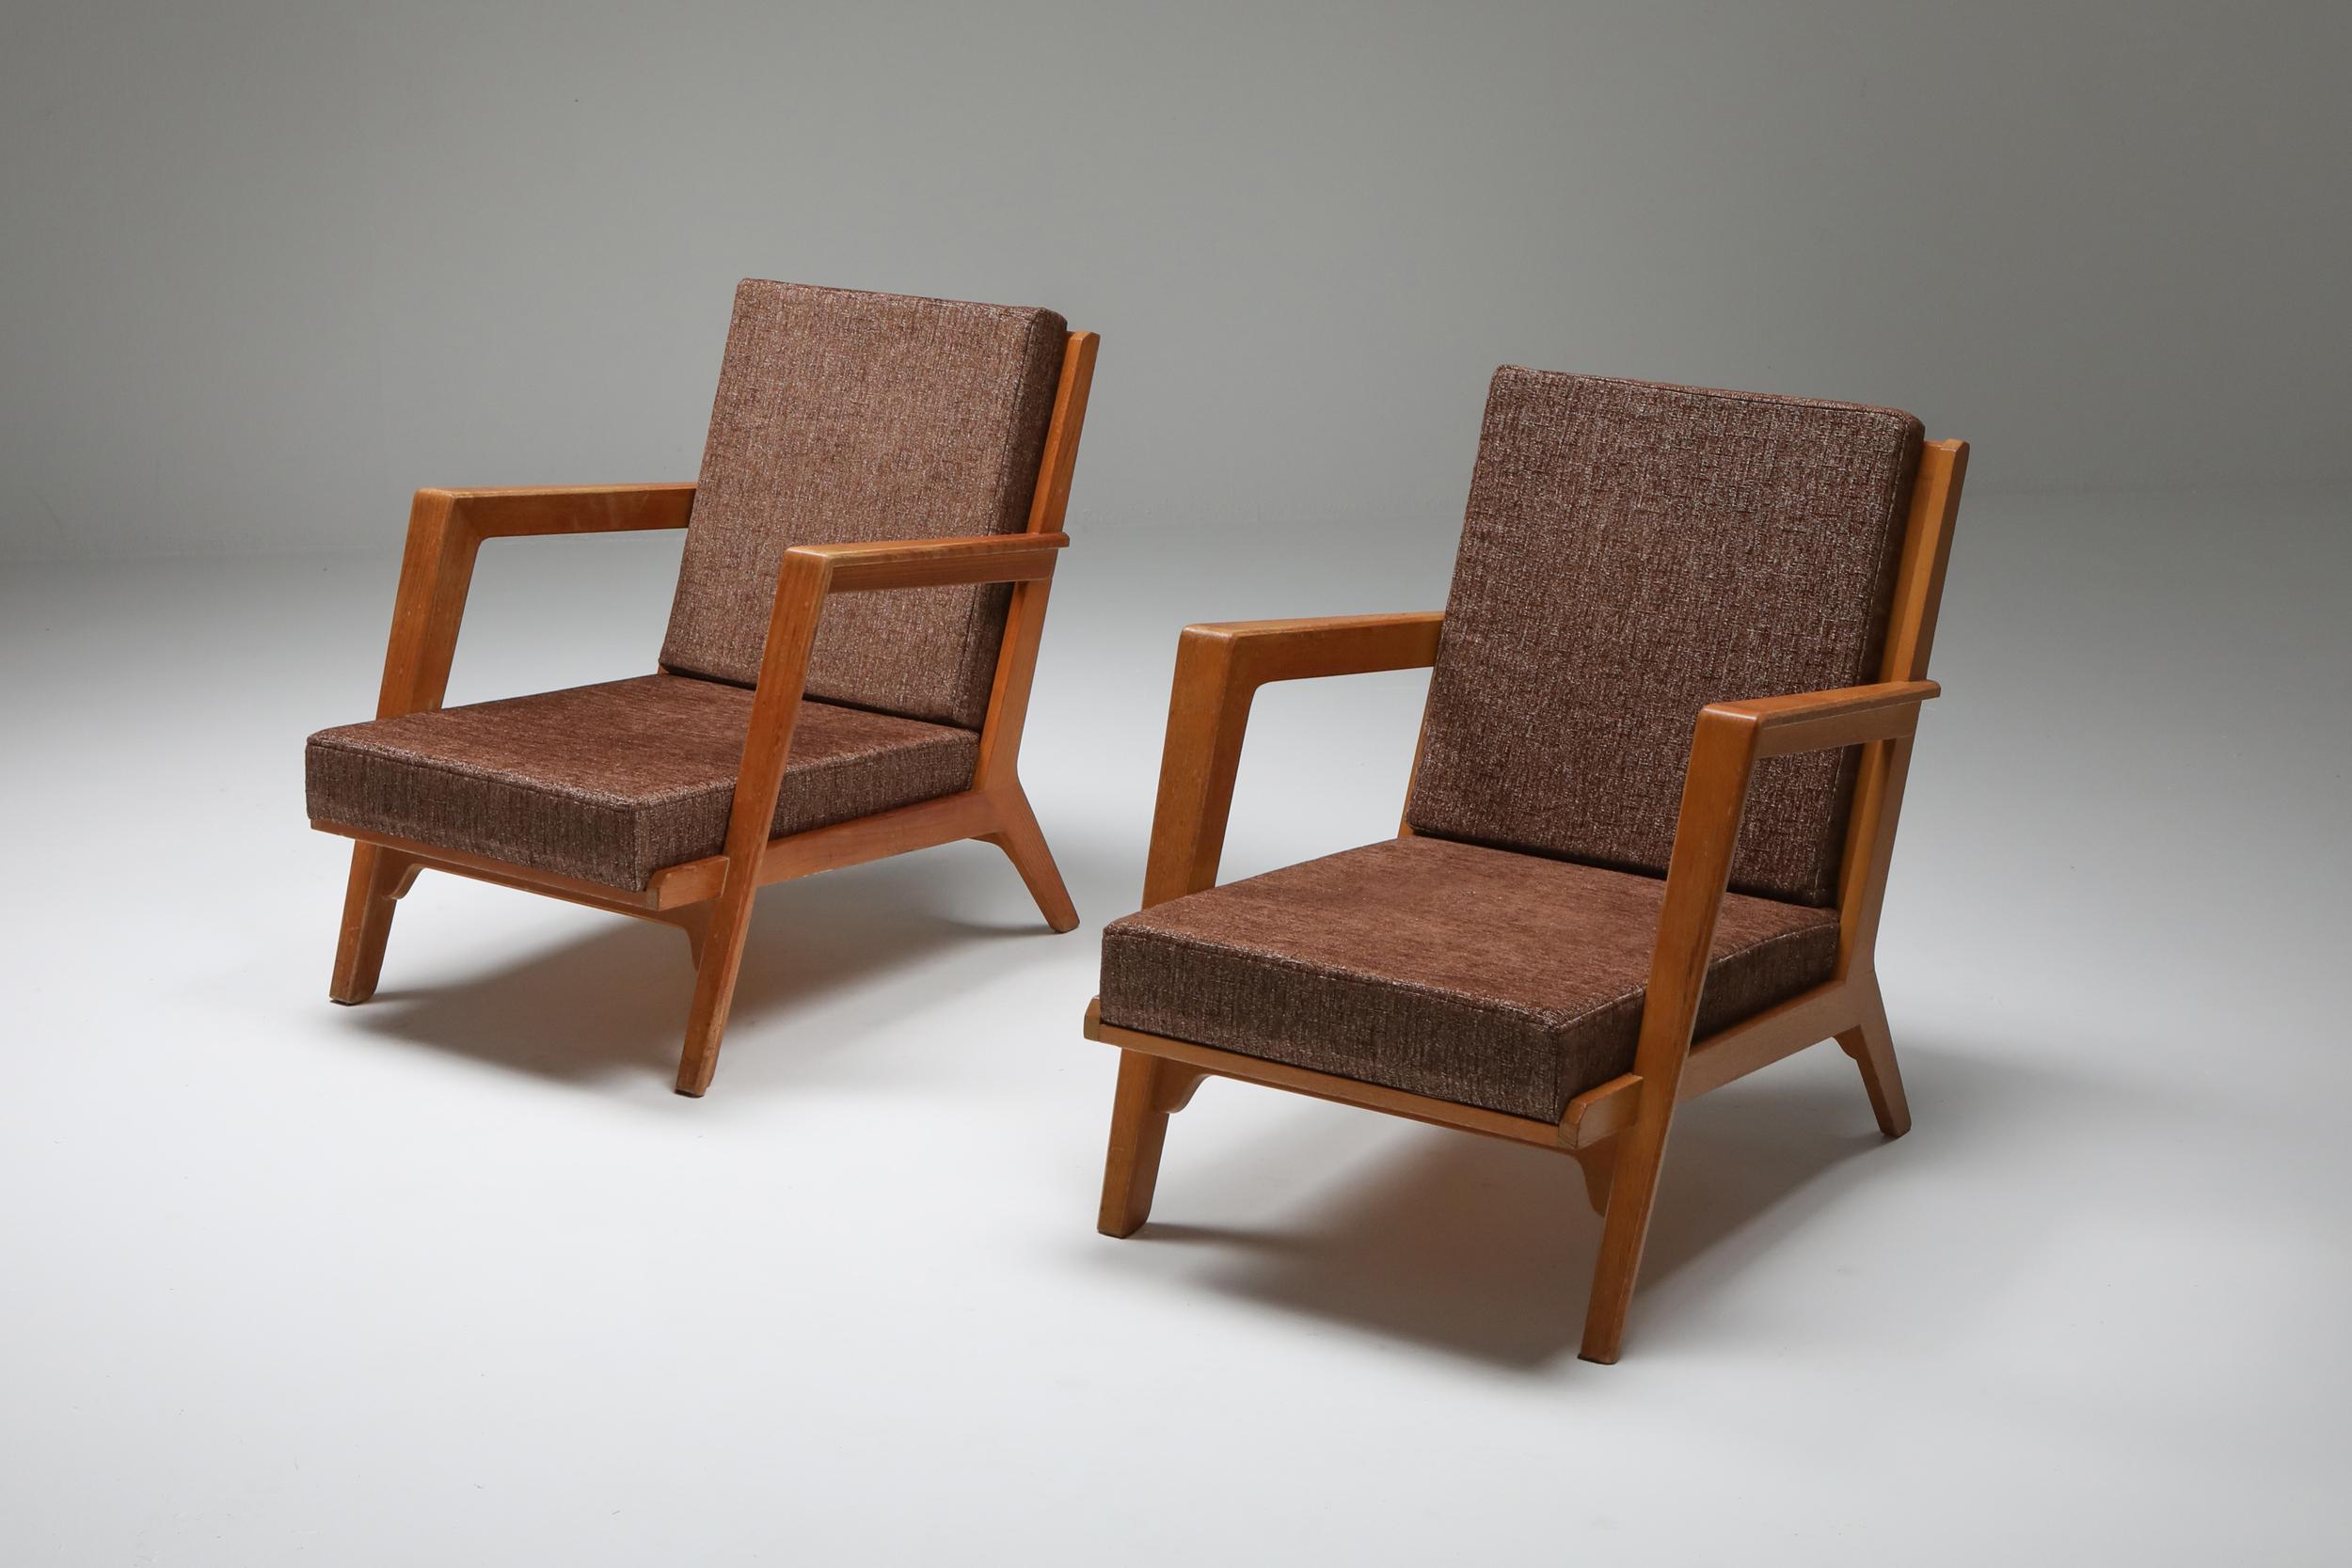 Elmar Berkovich, Paar Liegestühle, 1950, Niederlande.

Dies ist ein super seltenes Paar Stühle, original gepolstert, Teakholzrahmen mit atemberaubenden Details
Elmar Berkovich hat einige Werke in Museumssammlungen, wie dem Stedelijk und dem